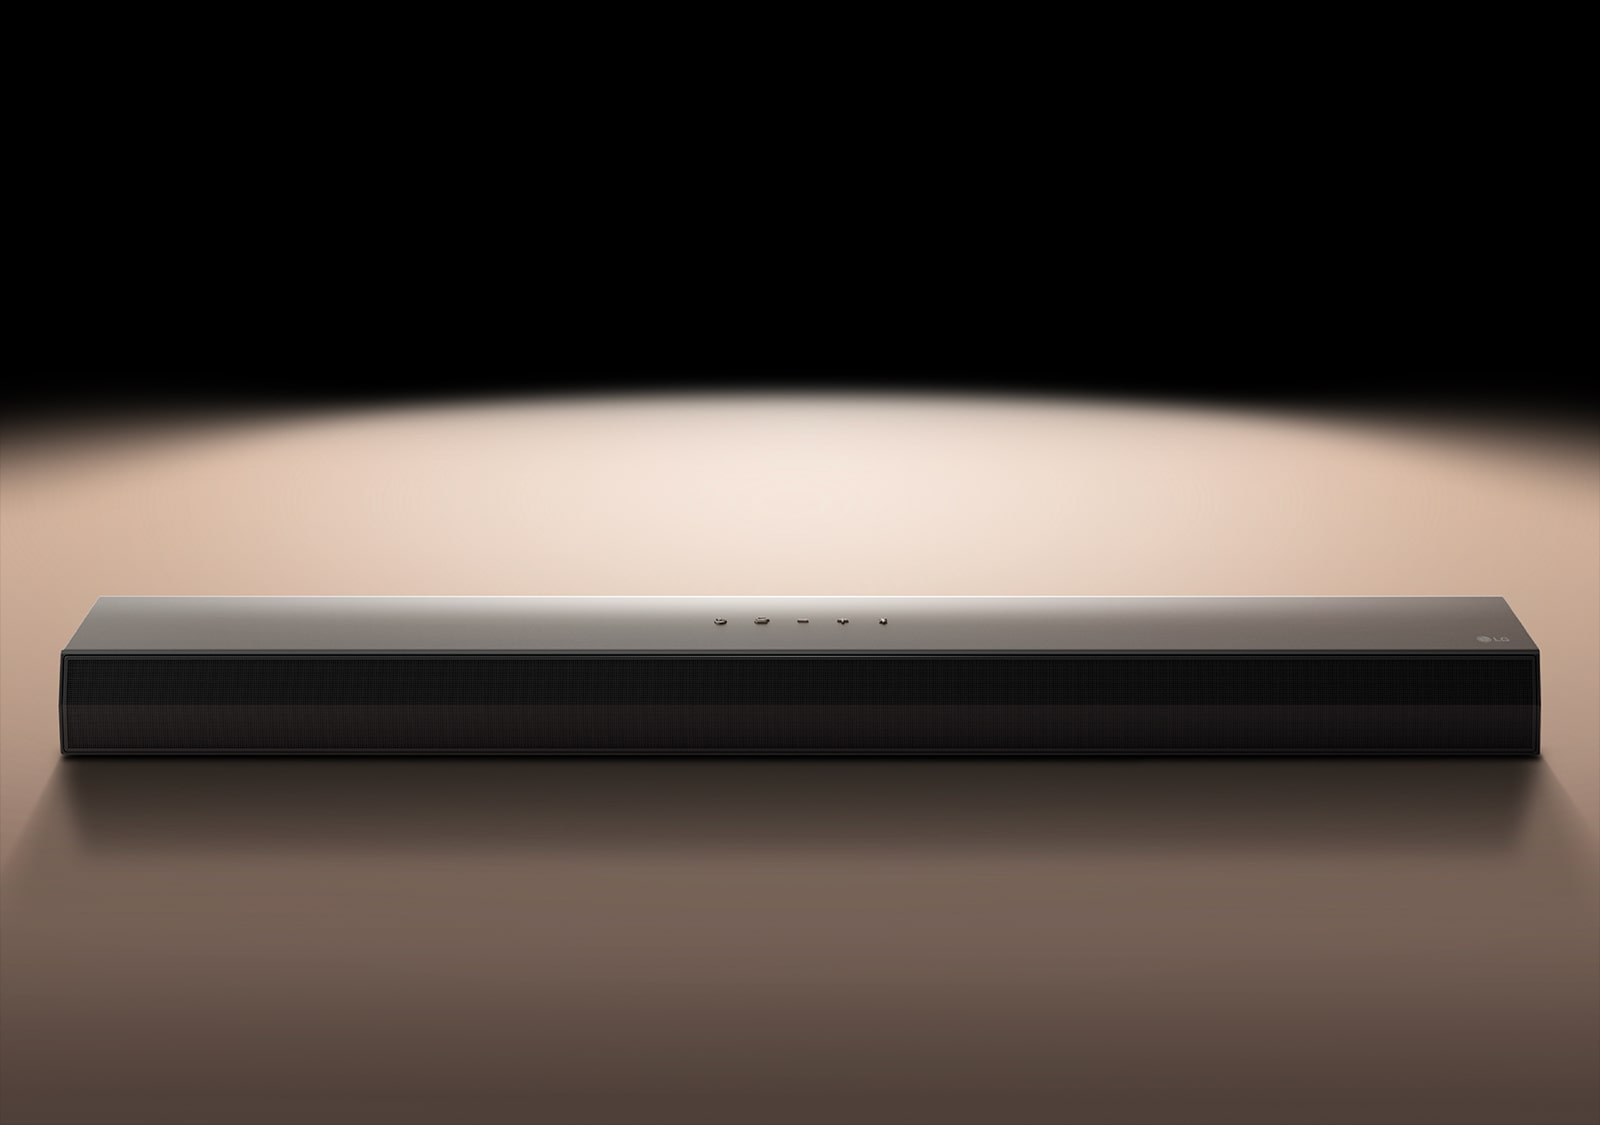 LG Soundbar vor einem schwarzen Hintergrund, der von einem Scheinwerfer angestrahlt wird.